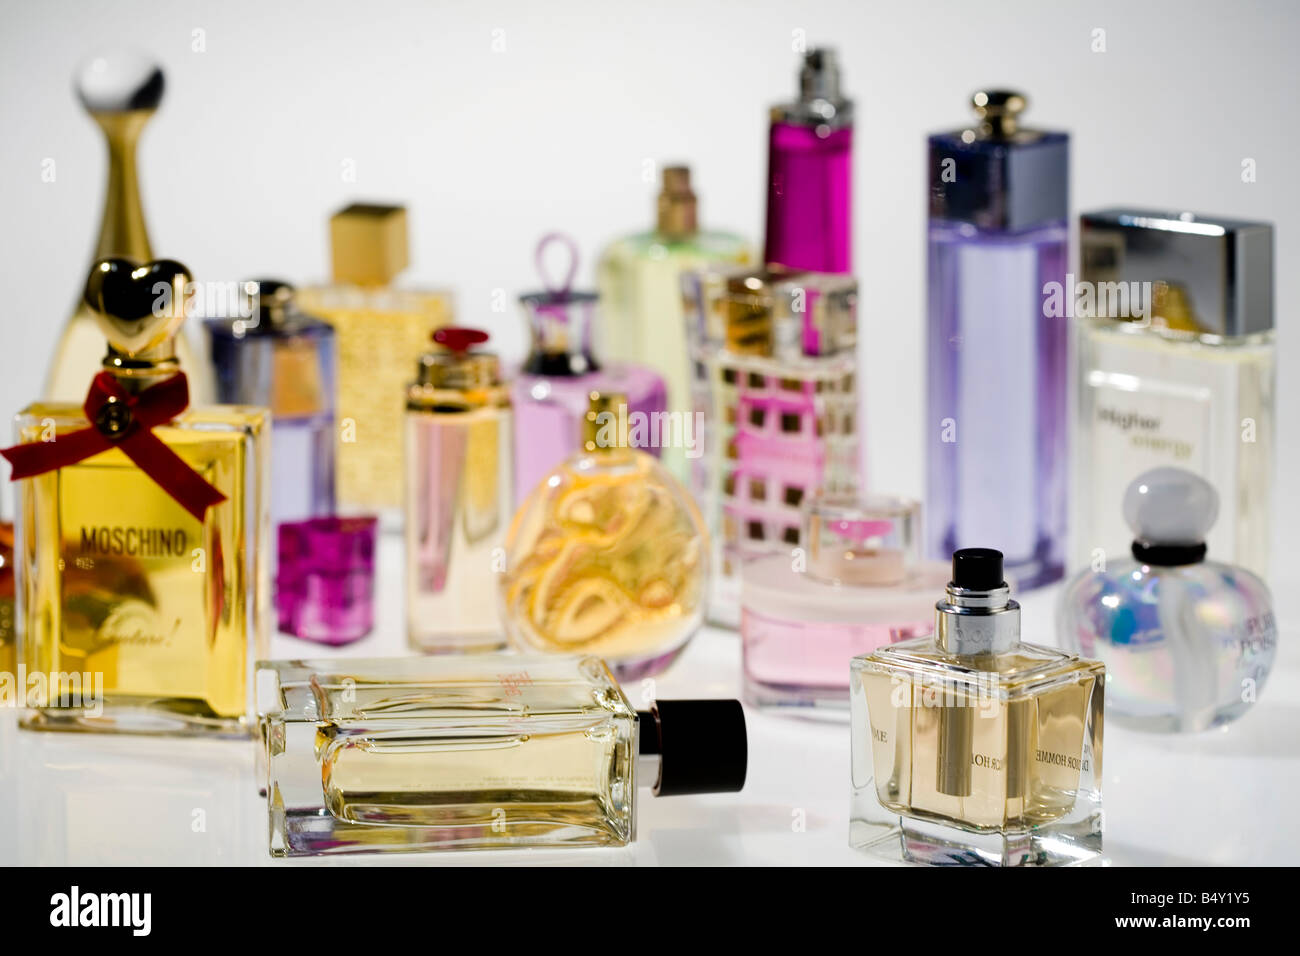 Perfumes immagini e fotografie stock ad alta risoluzione - Alamy